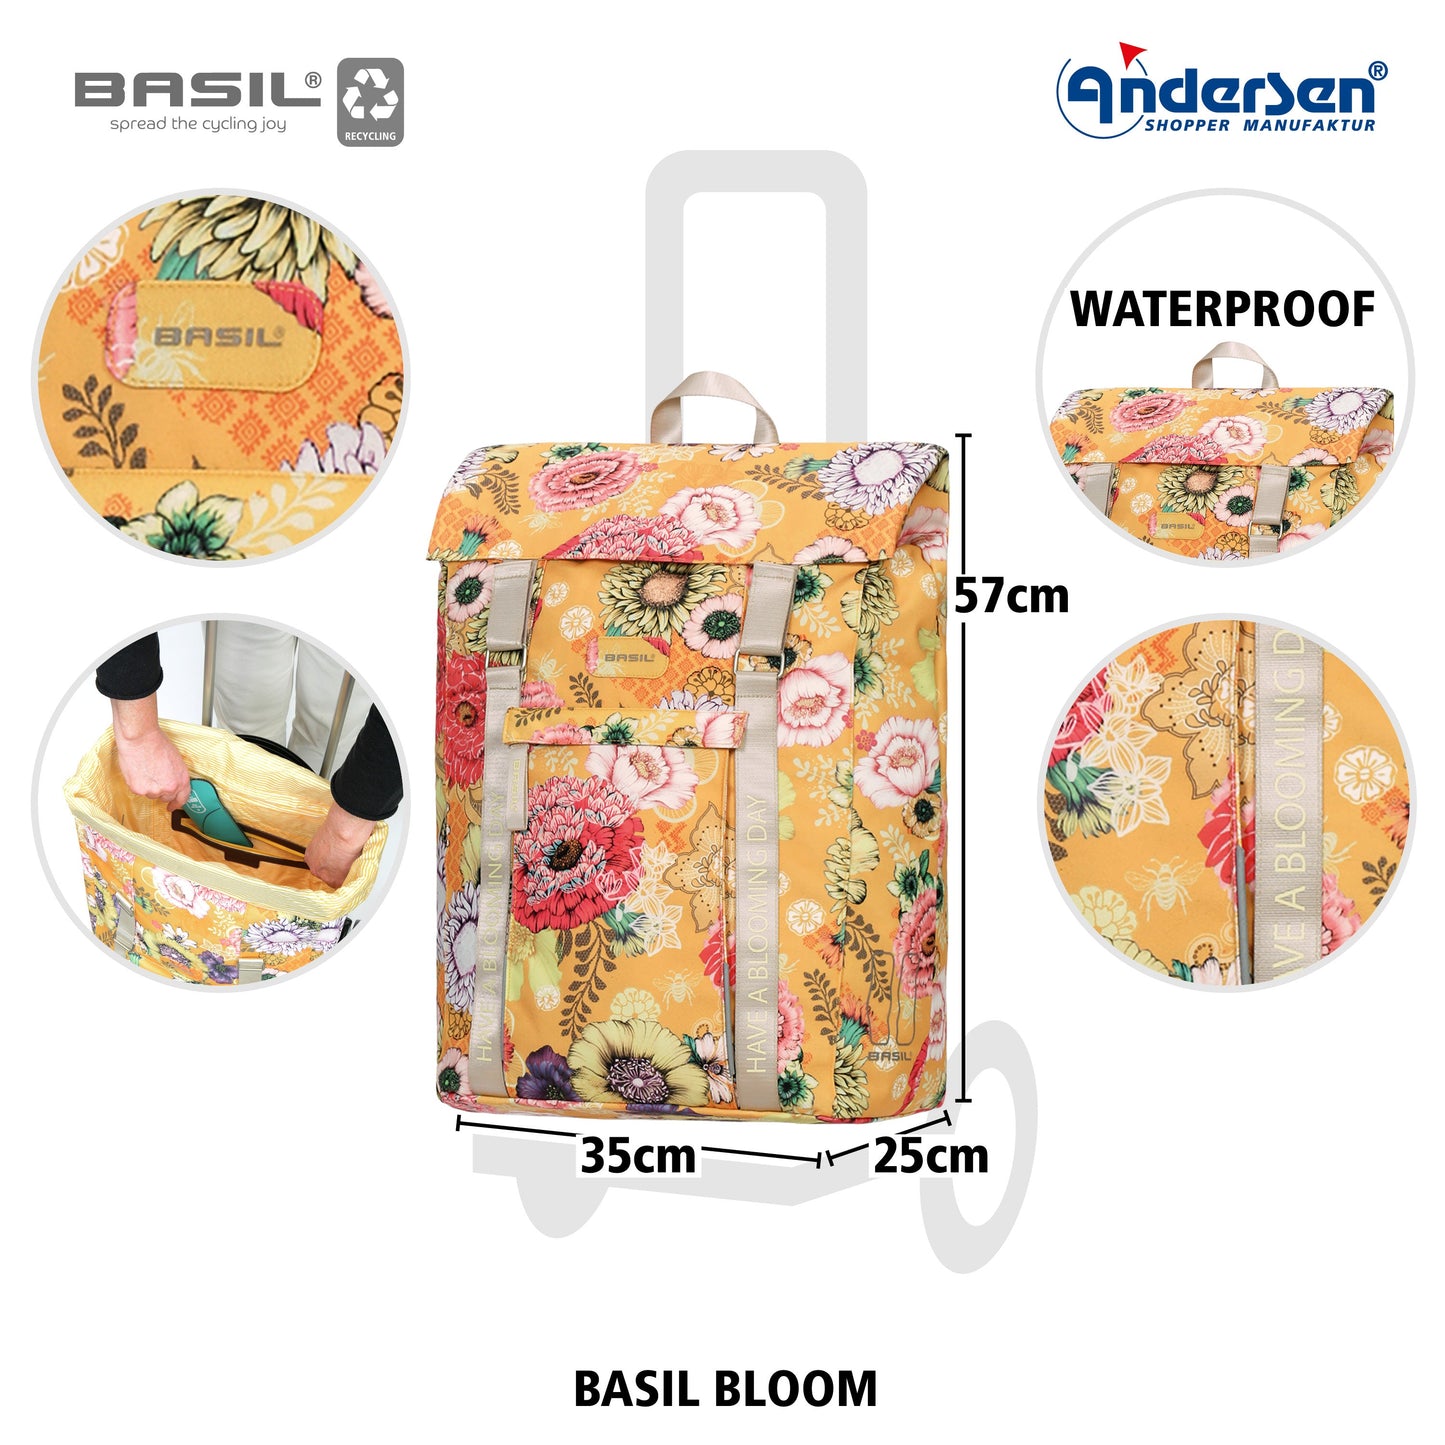 Andersen Shopper Manufaktur-Unus Shopper Basil Bloom gelb-www.shopping-trolley.ch-bild4